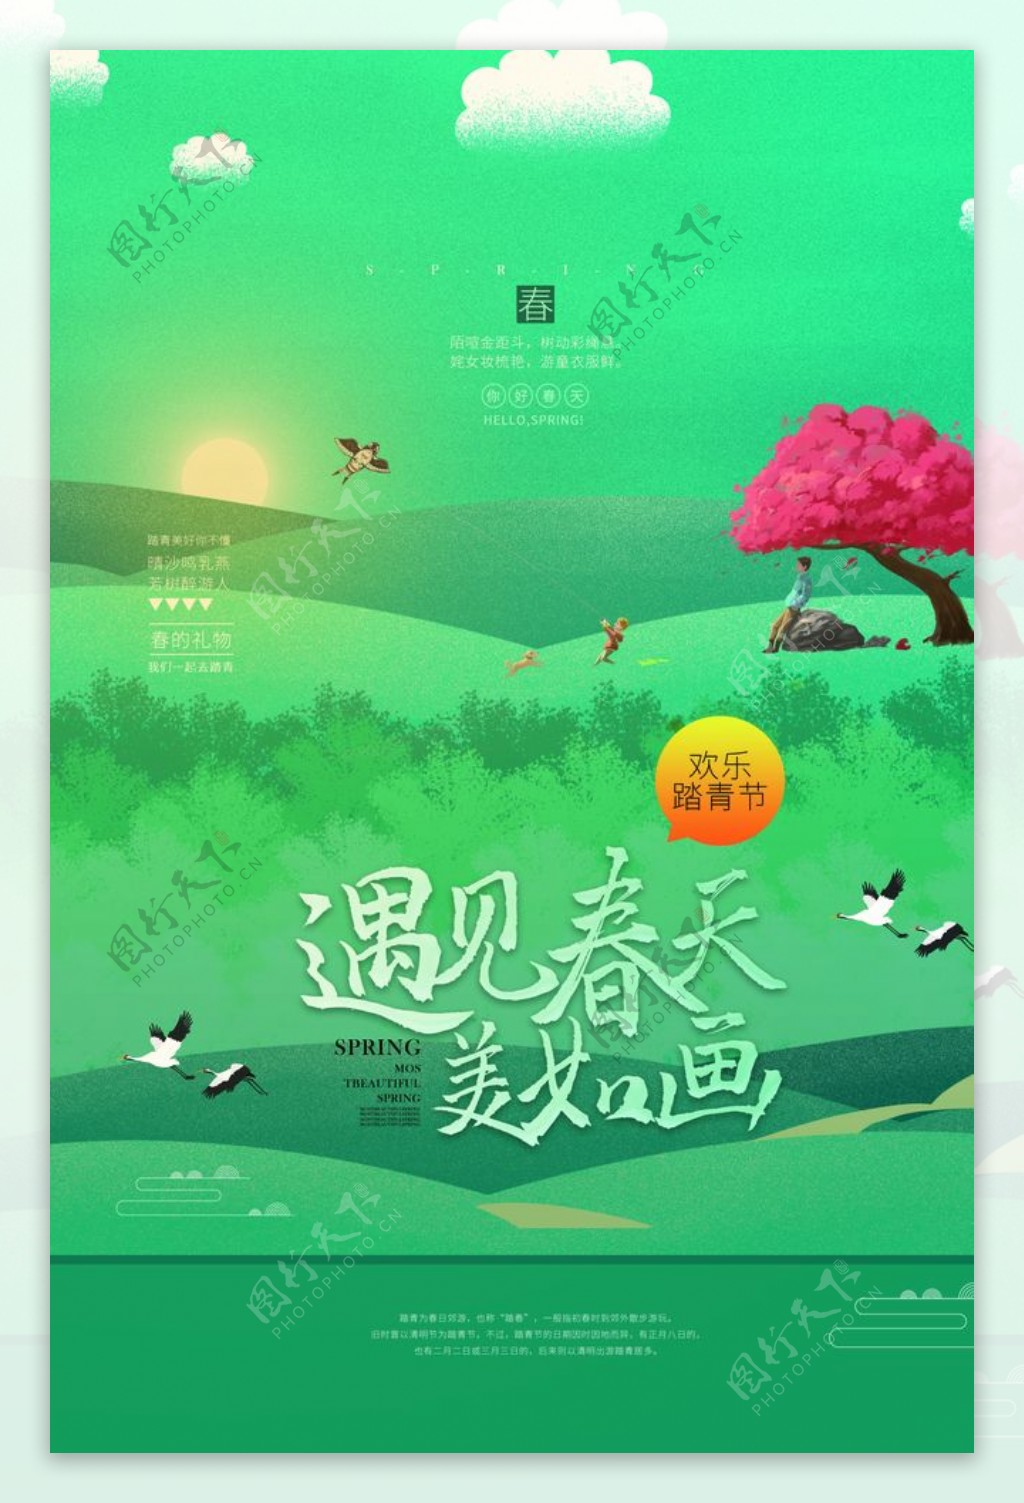 踏青节节日促销宣传活动海报